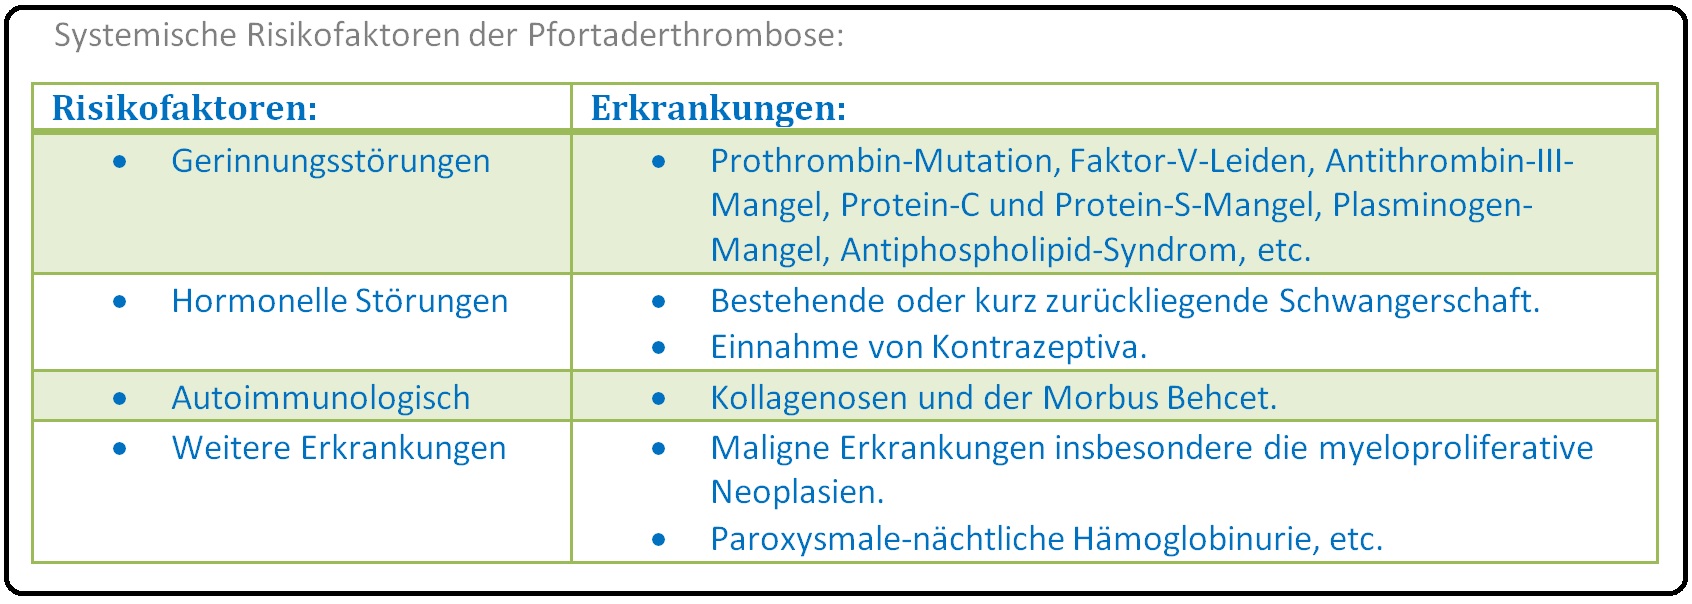 460 Systemische Risikofaktoren der Pfortaderthrombose